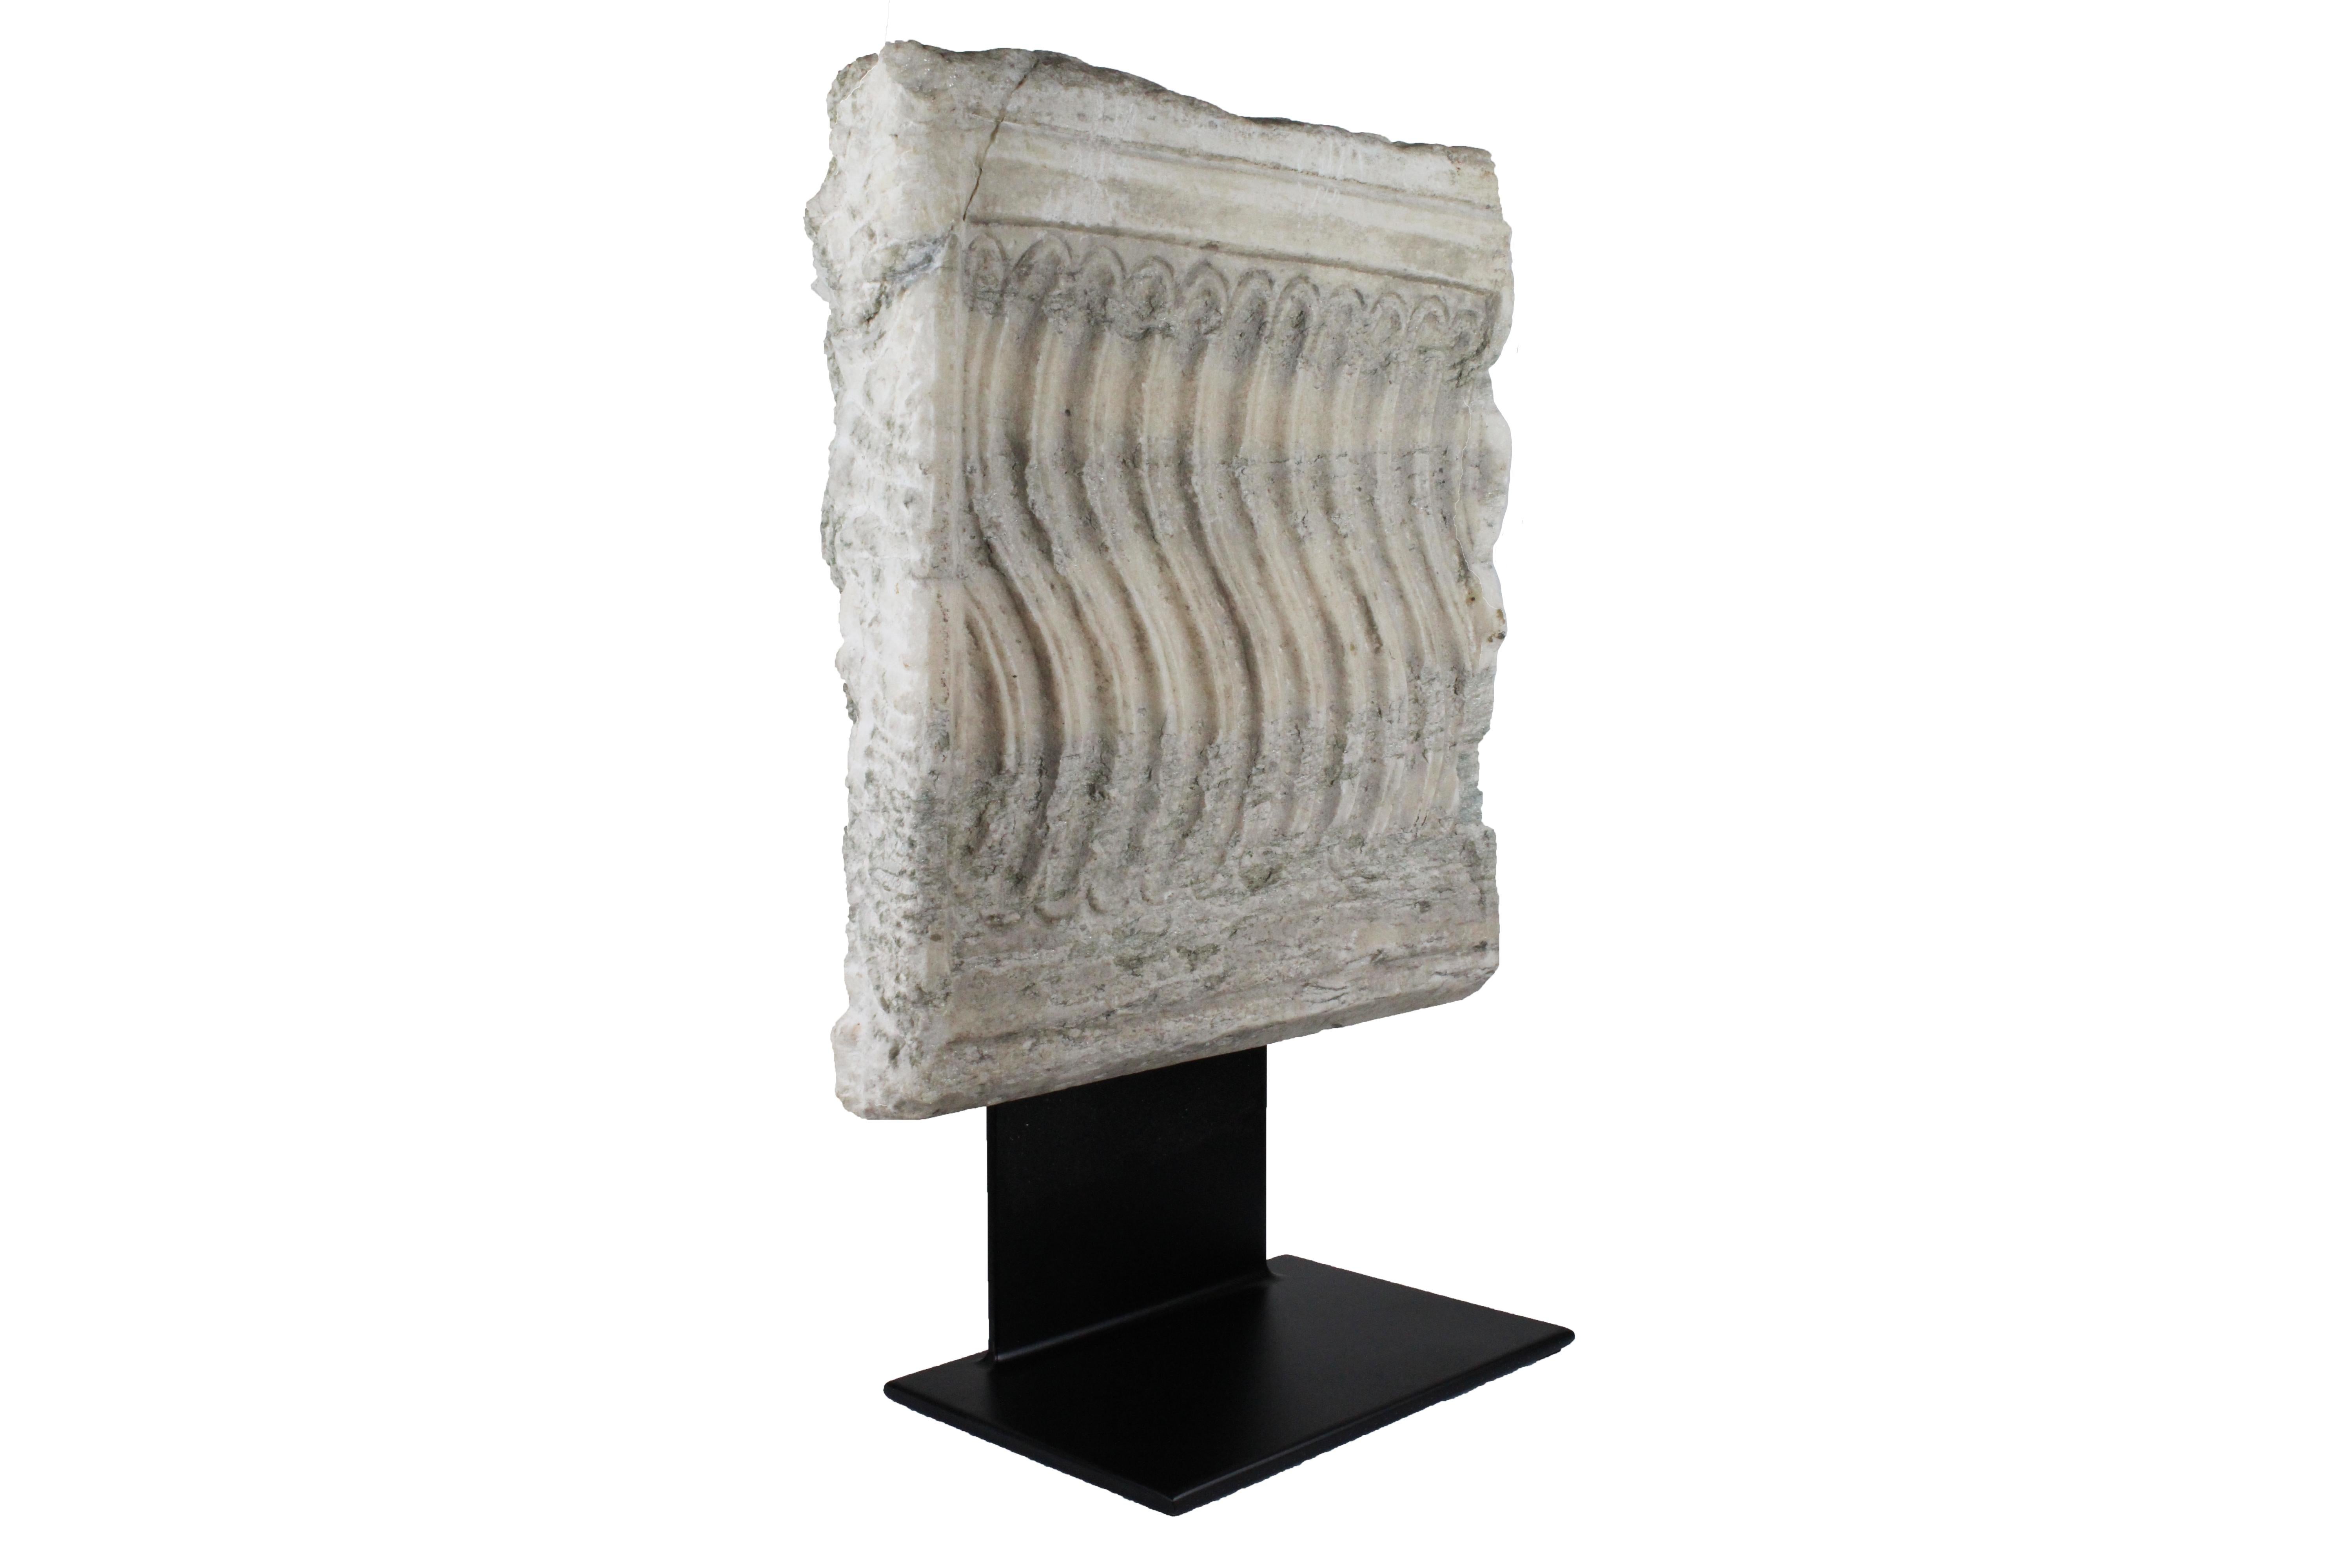 Antike römische Marmorskulptur, 2. Jahrhundert n. Chr., Südfrankreich.
Diese Skulptur ist eine römische Antiquität.
Frontalschnitt eines römischen Sarkophags.
Hergestellt aus weißem Marmor und Eisen.
Sehr guter antiker Zustand.